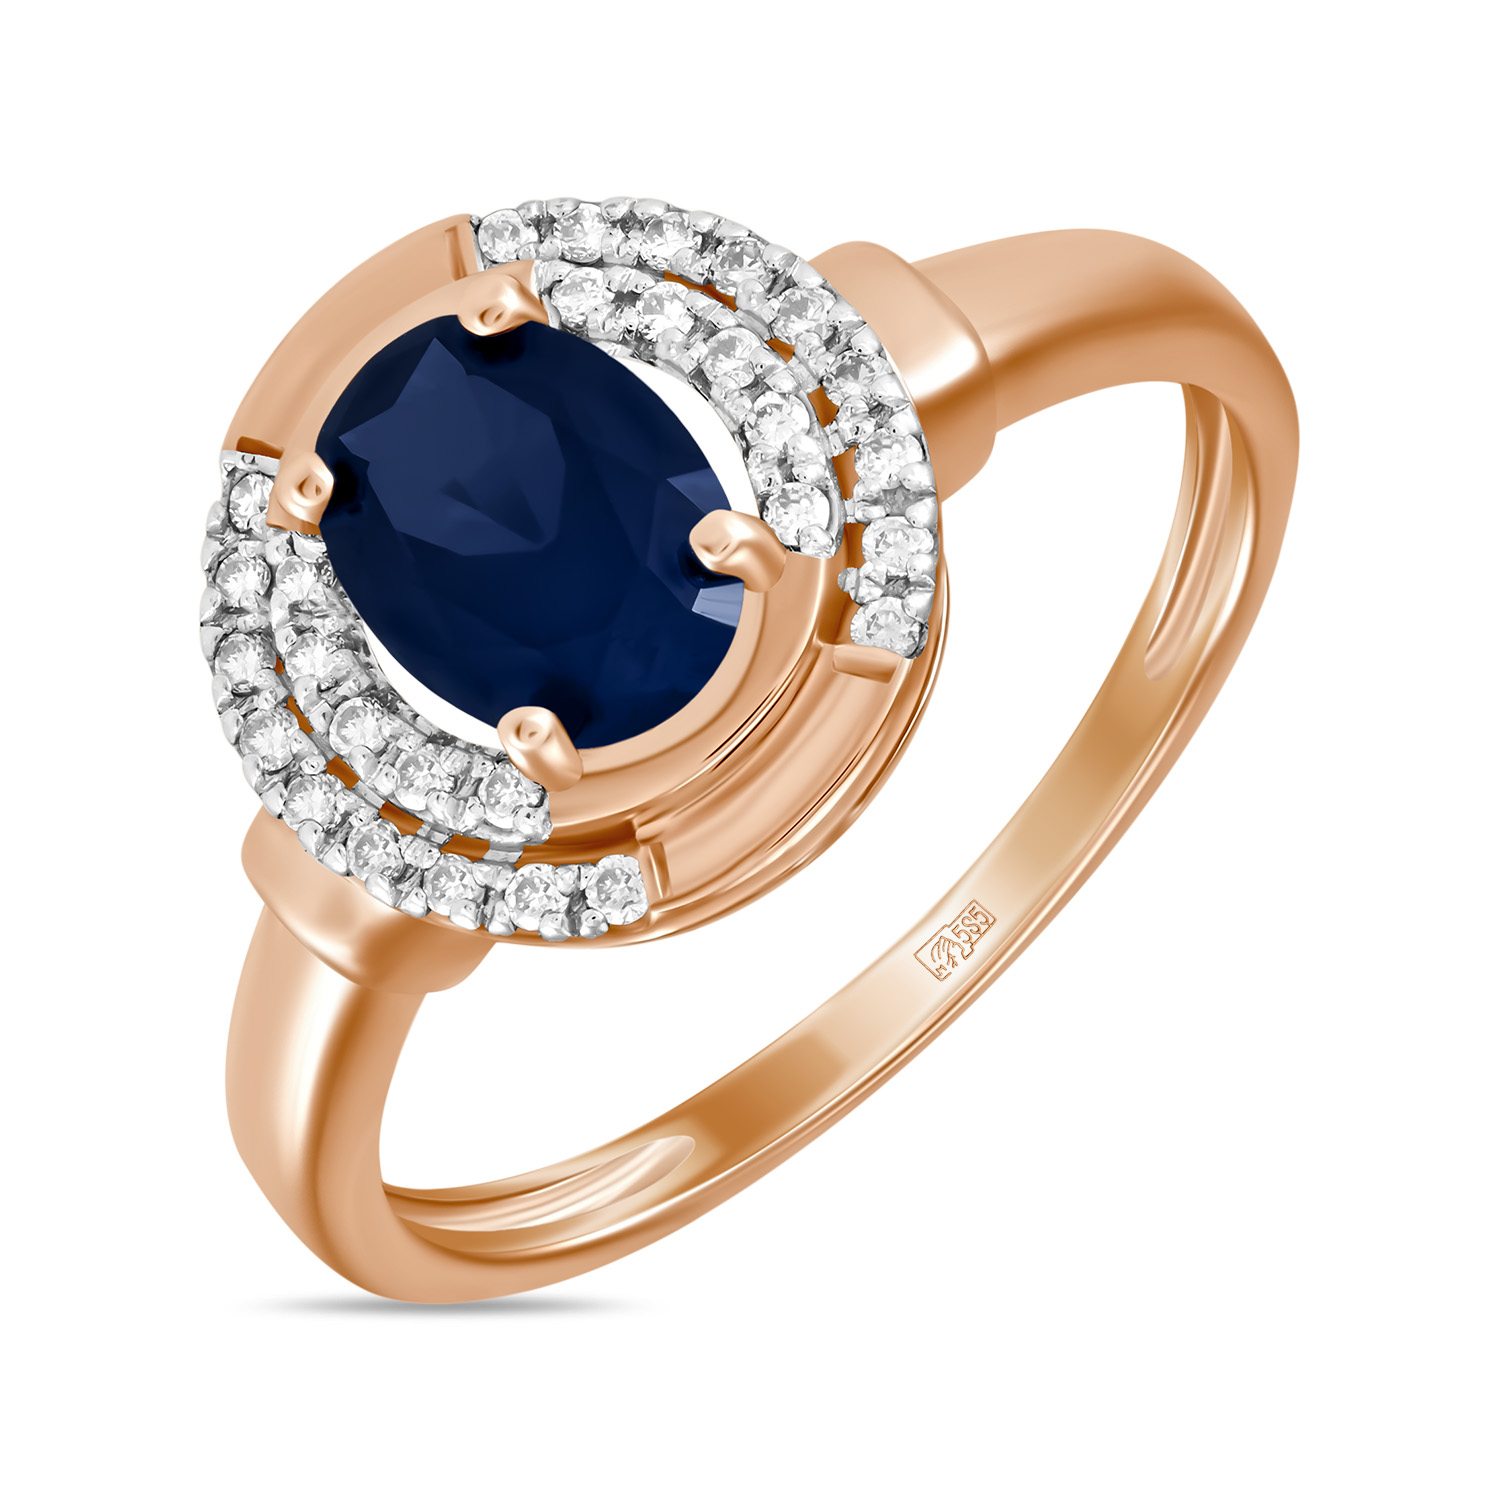 Кольца МЮЗ Золотое кольцо с бриллиантами и выращенным сапфиром miuz ru золотое кольцо c аметистами бриллиантами гранатами кварцем и выращенным сапфиром